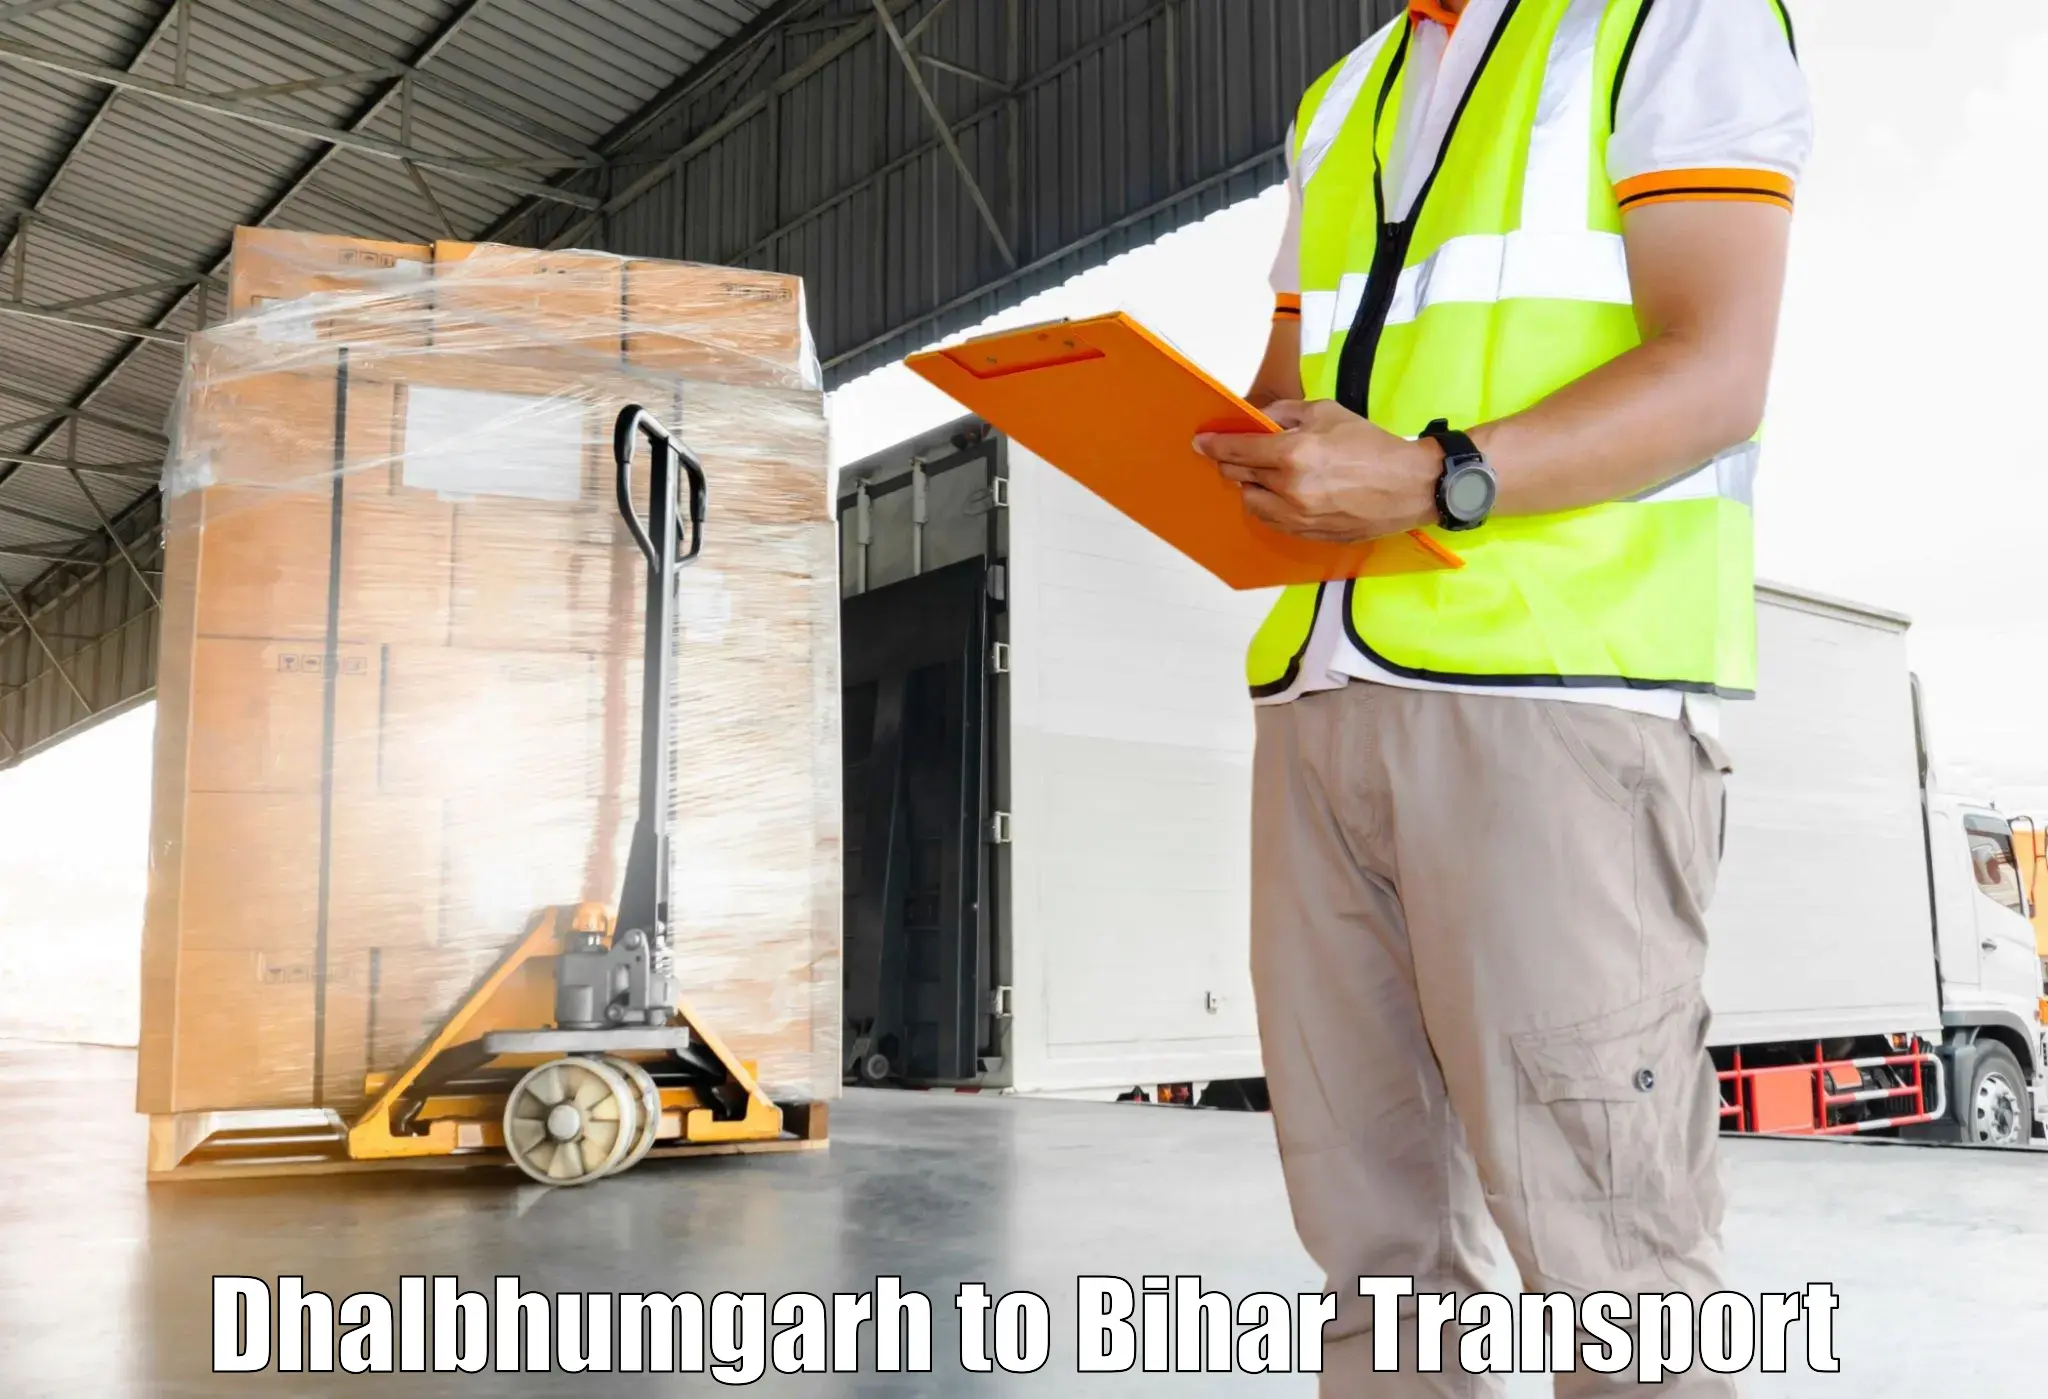 Nearest transport service Dhalbhumgarh to Manihari